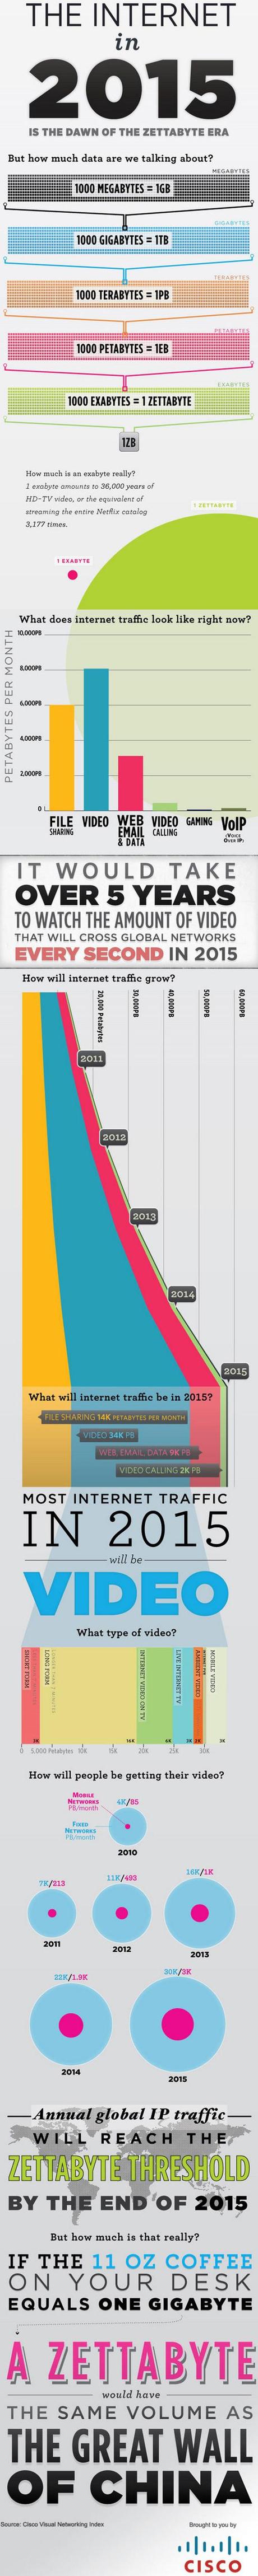 Ecco come sarà internet nel 2015